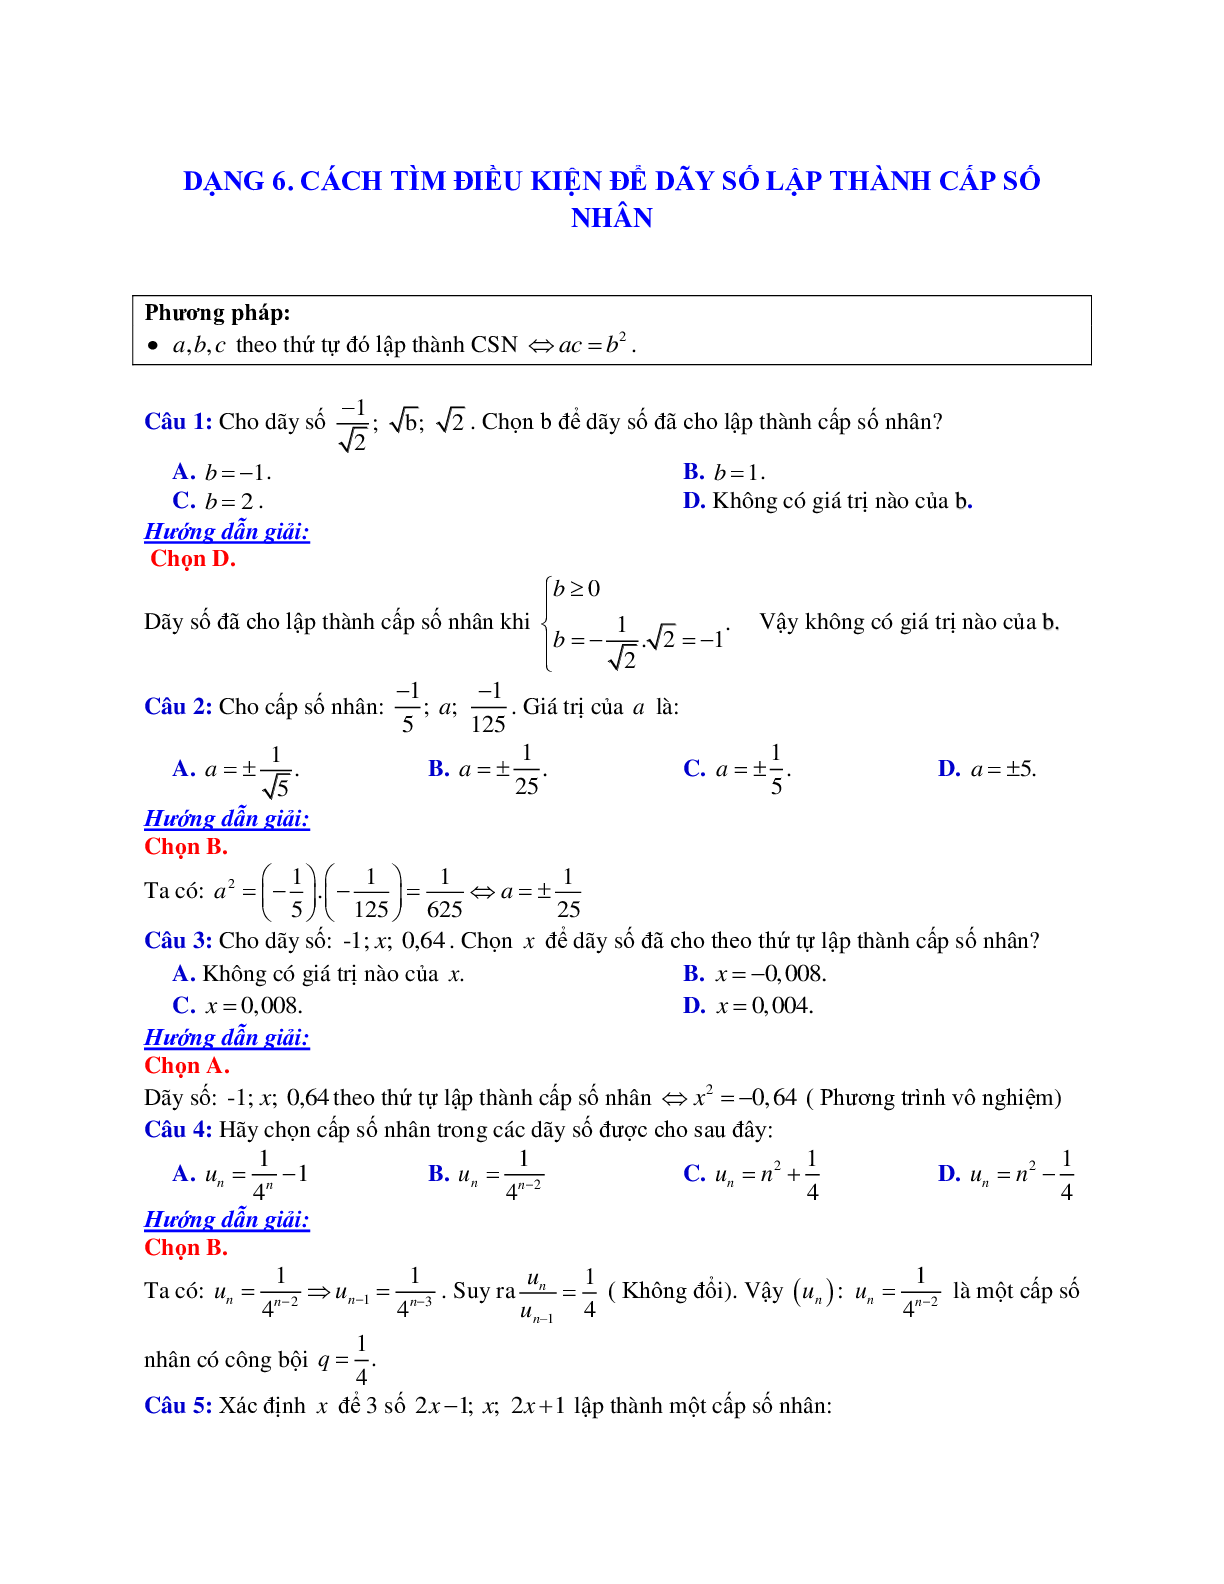 Phương pháp giải và bài tập về Cách tìm điều kiện để dãy số lập thành cấp số nhân (trang 1)